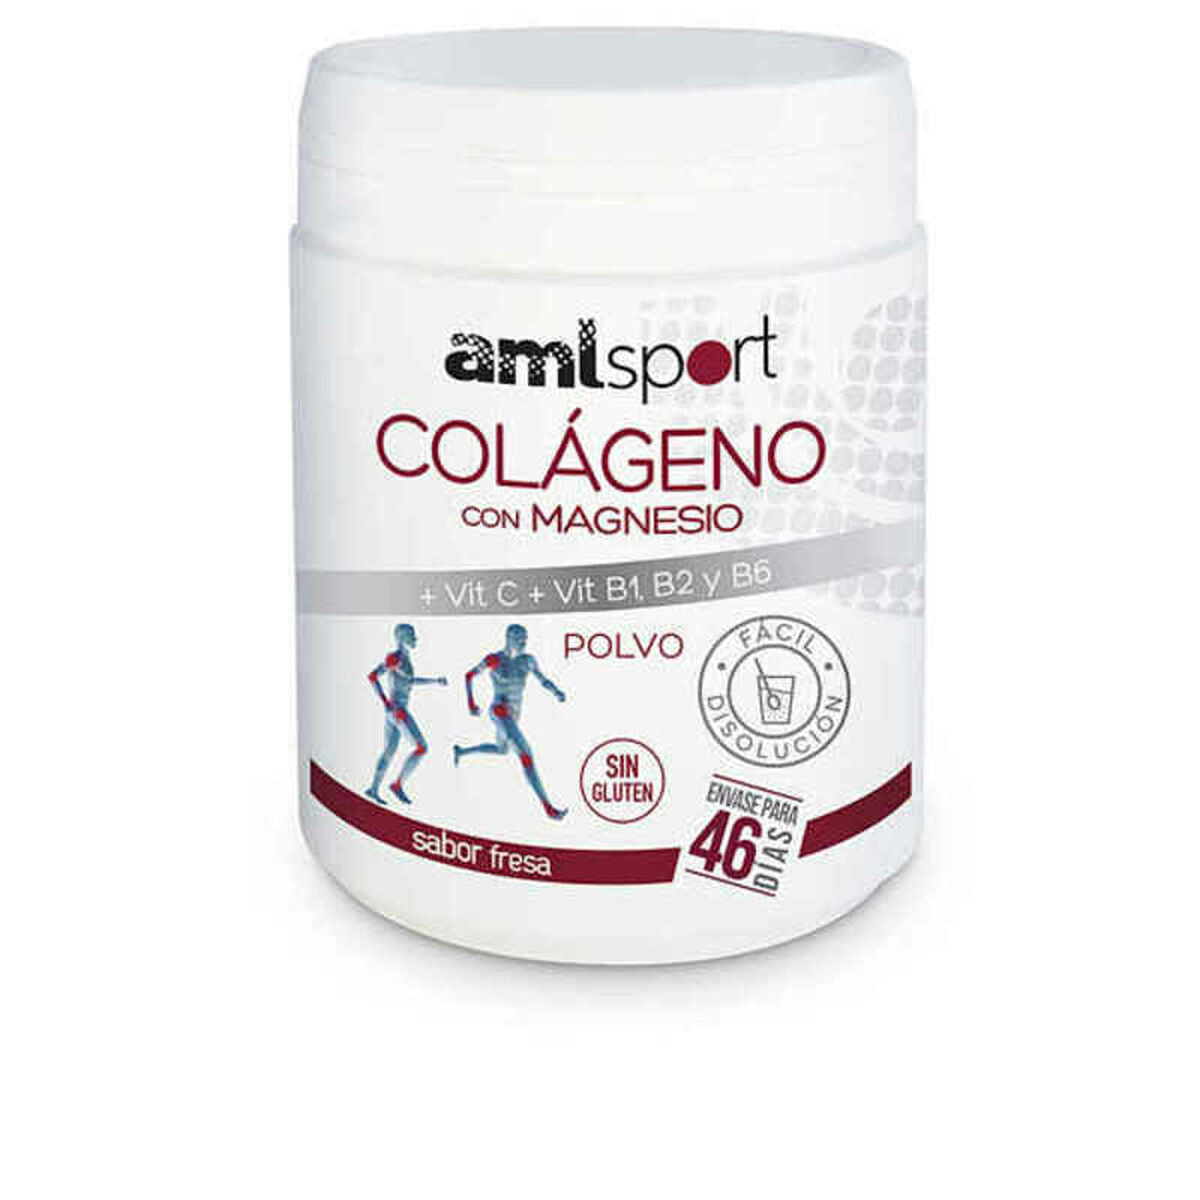 Collagen Amlsport Colágeno Con Magnesio C Collagen Magnesium Vitamin C Dust (350 g)-0